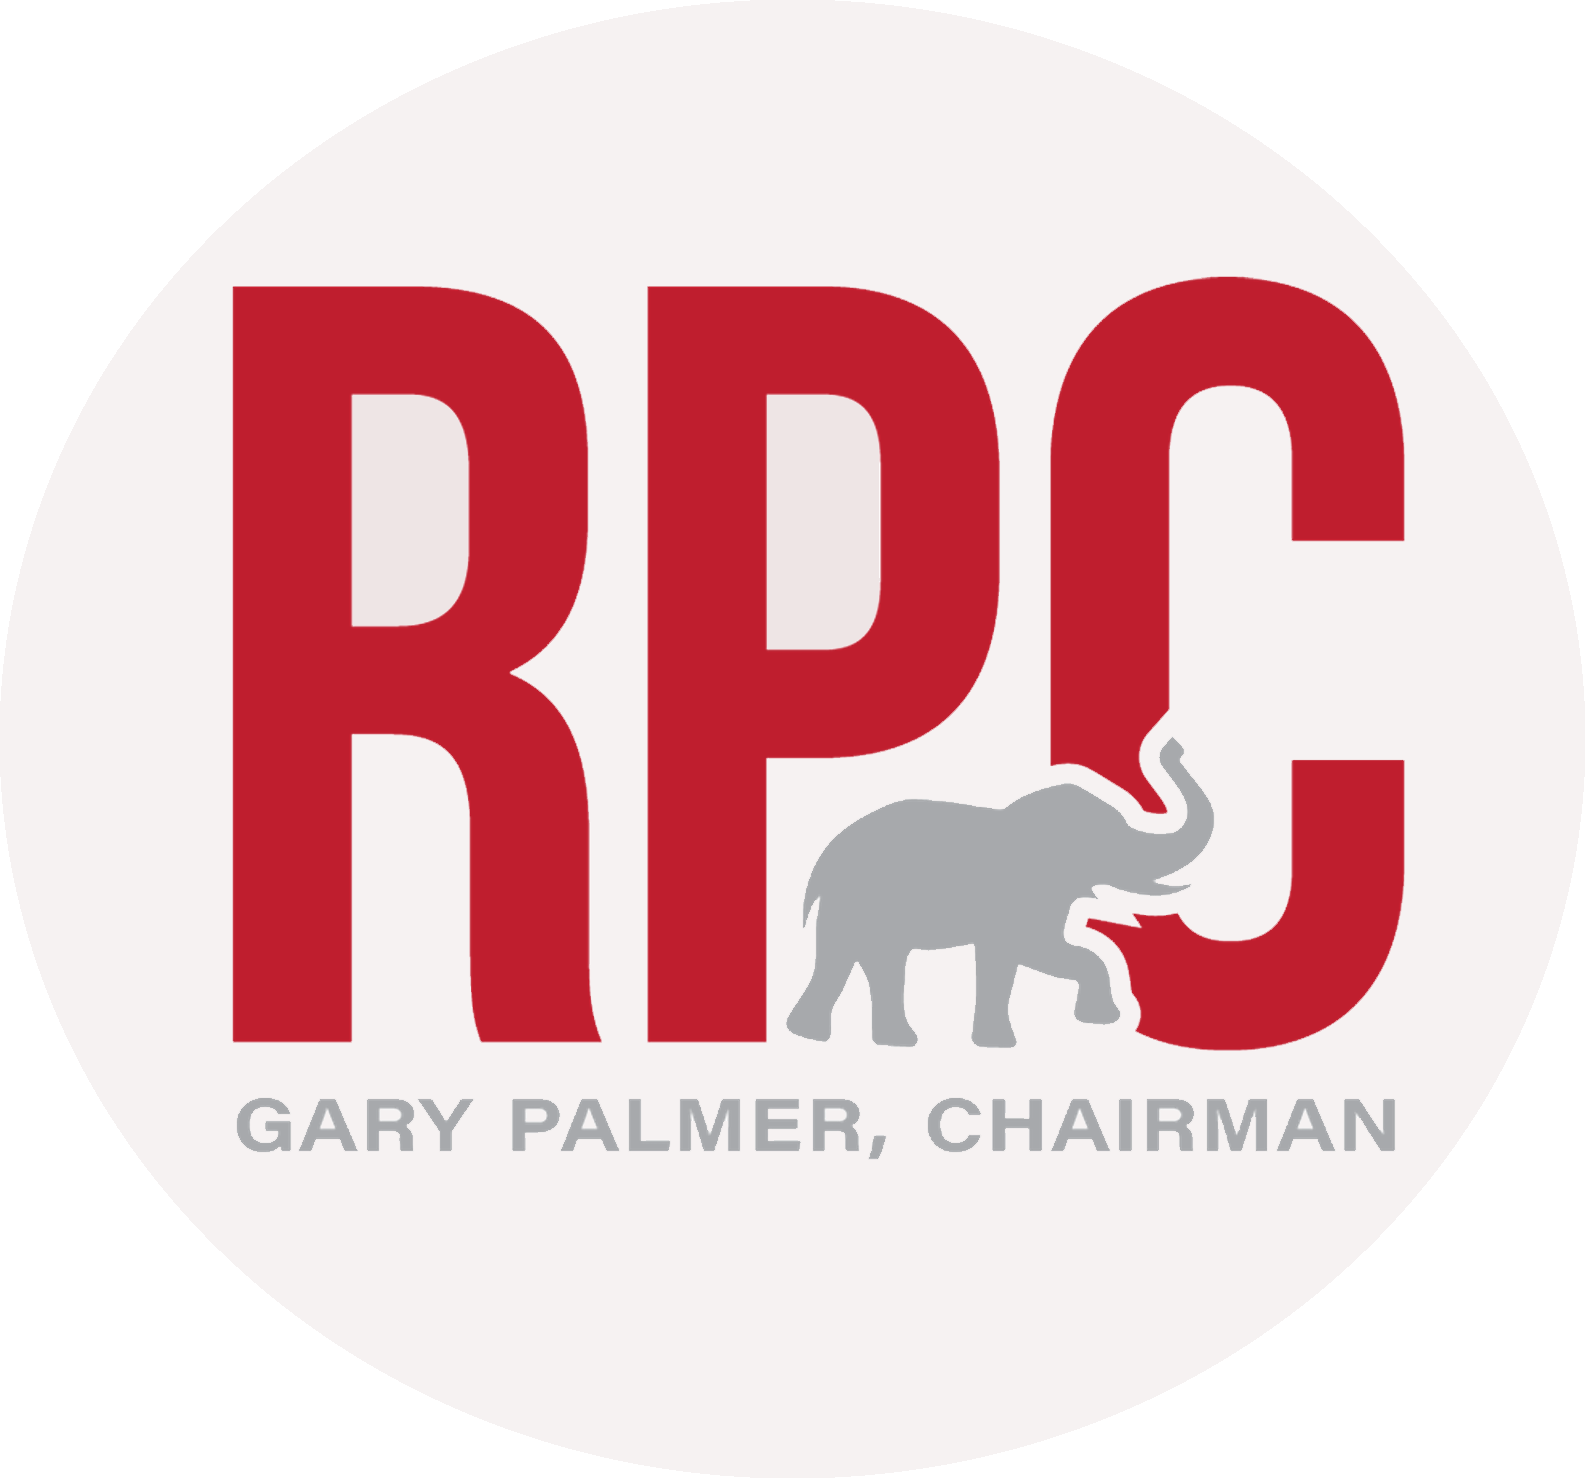 Republican Policy logo